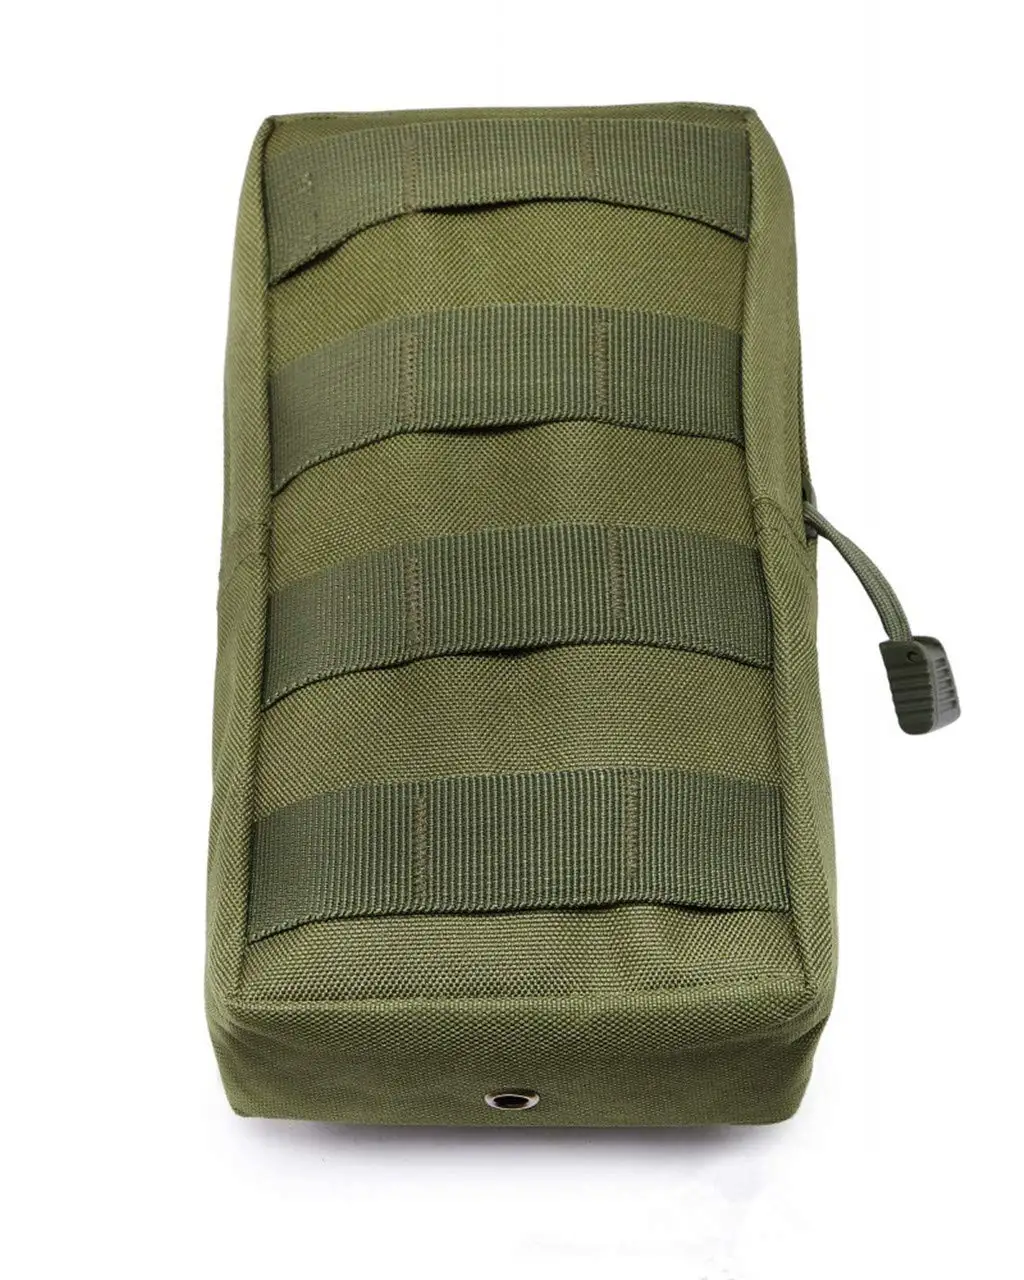 Страйкбол Пейнтбол Спорт военный 600D MOLLE сумка Тактические хозяйственные сумки жилет EDC гаджет охотничий поясной пакет наружное оборудование